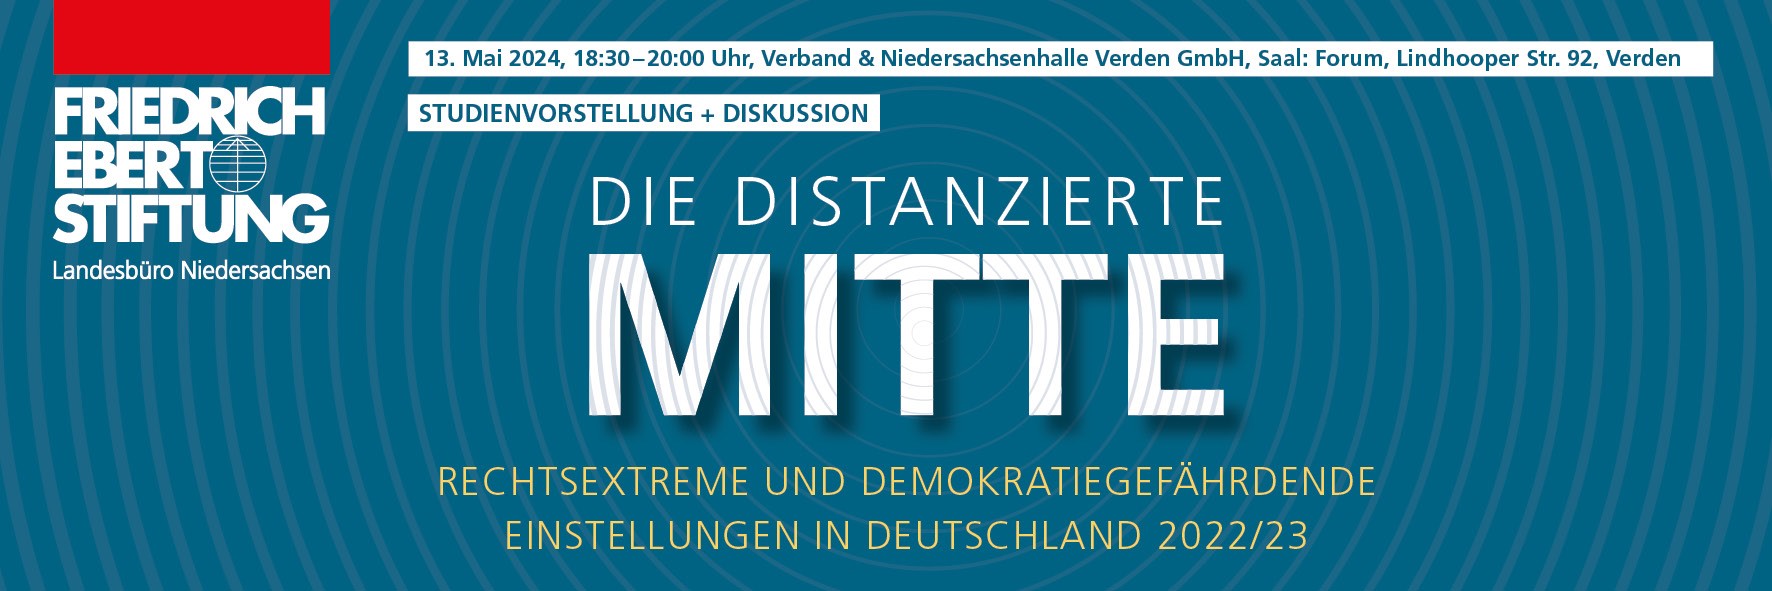 Studienvorstellung "Die distanzierte Mitte. Rechtsextreme und demokratiegefährdende Einstellungen in Deutschland 2022/23"